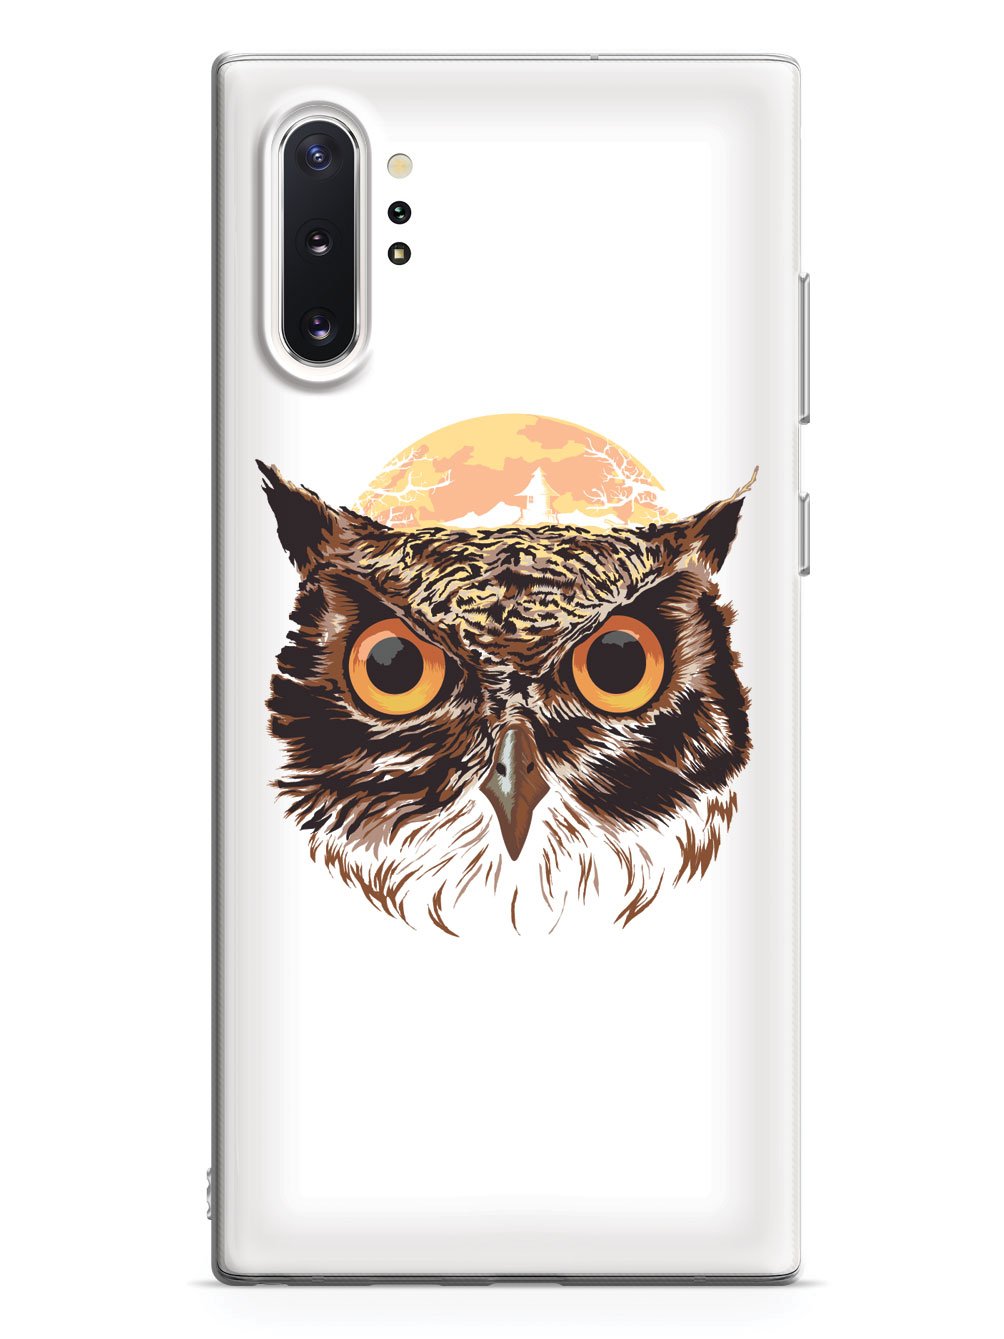 Night Owl - White Case